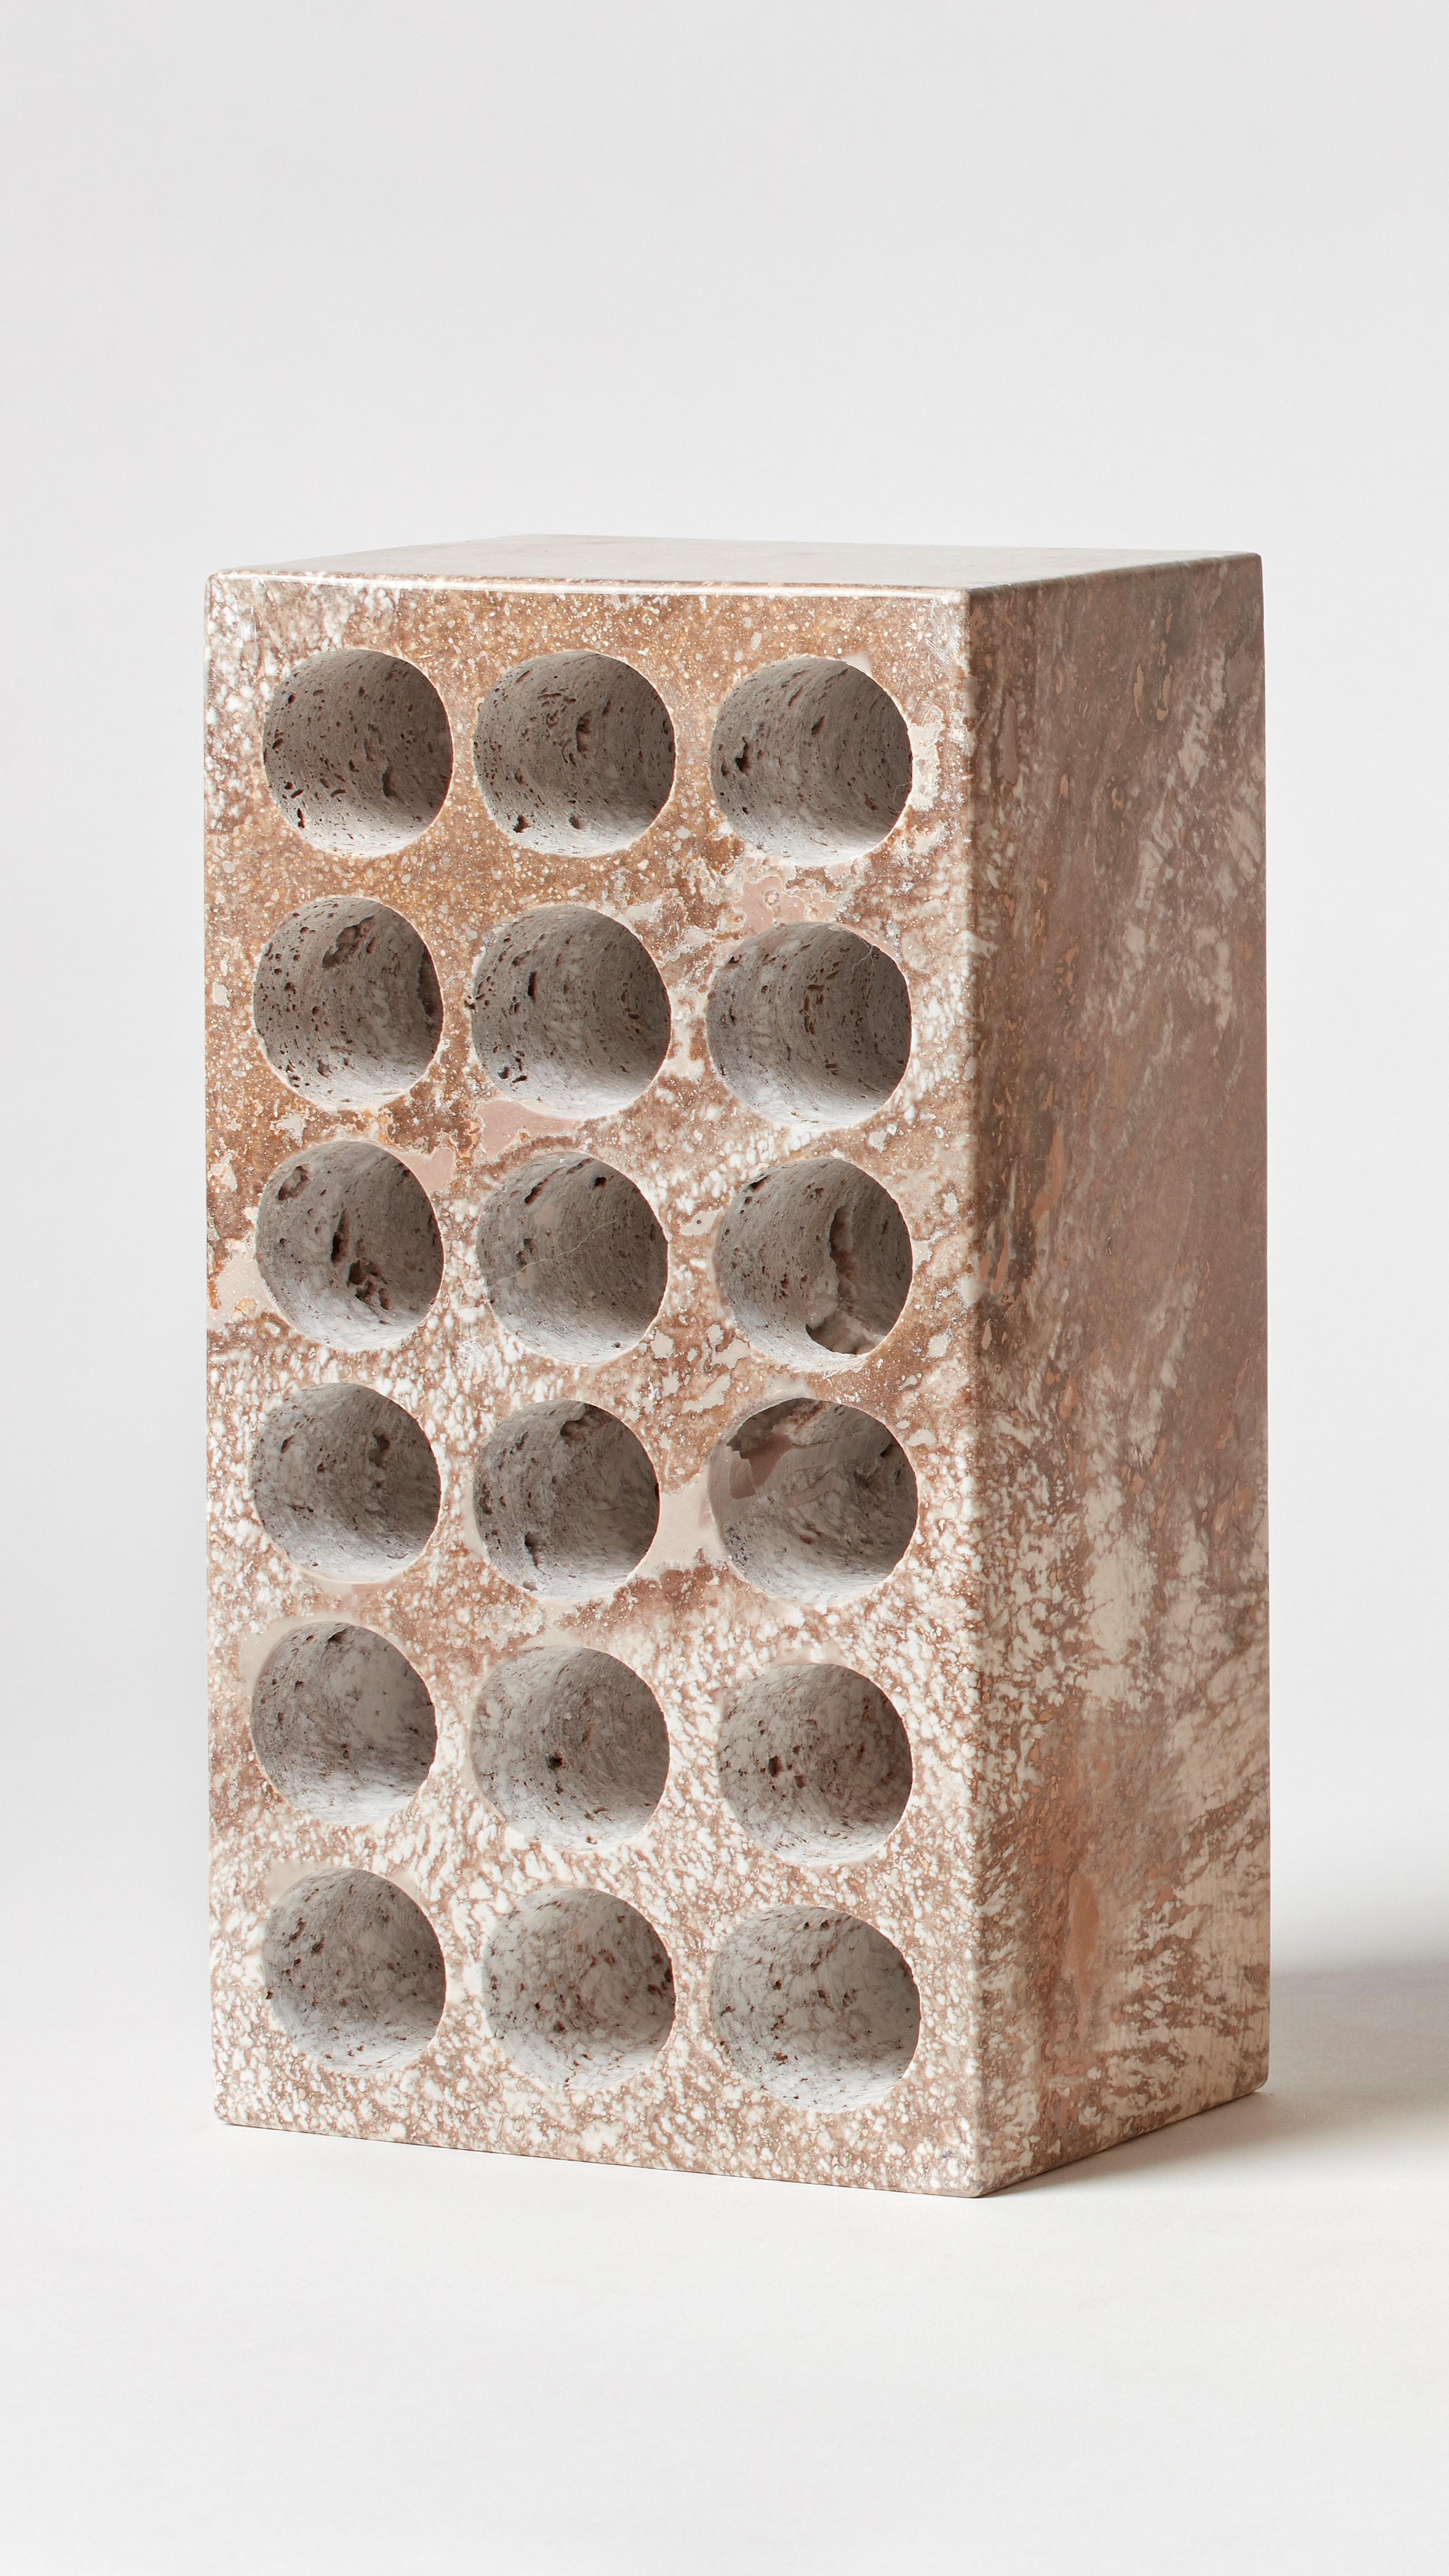 BRICK von Estudio Rafael Freyre
Abmessungen: B 12,5 T 9 x H 23 cm 
MATERIALIEN: Anden-Steine
Auch verfügbar: Andere Oberflächen verfügbar.

Der Ziegelstein ist ein allgemeines konstruktives Element, das Teil des städtischen Imaginären ist. In Peru